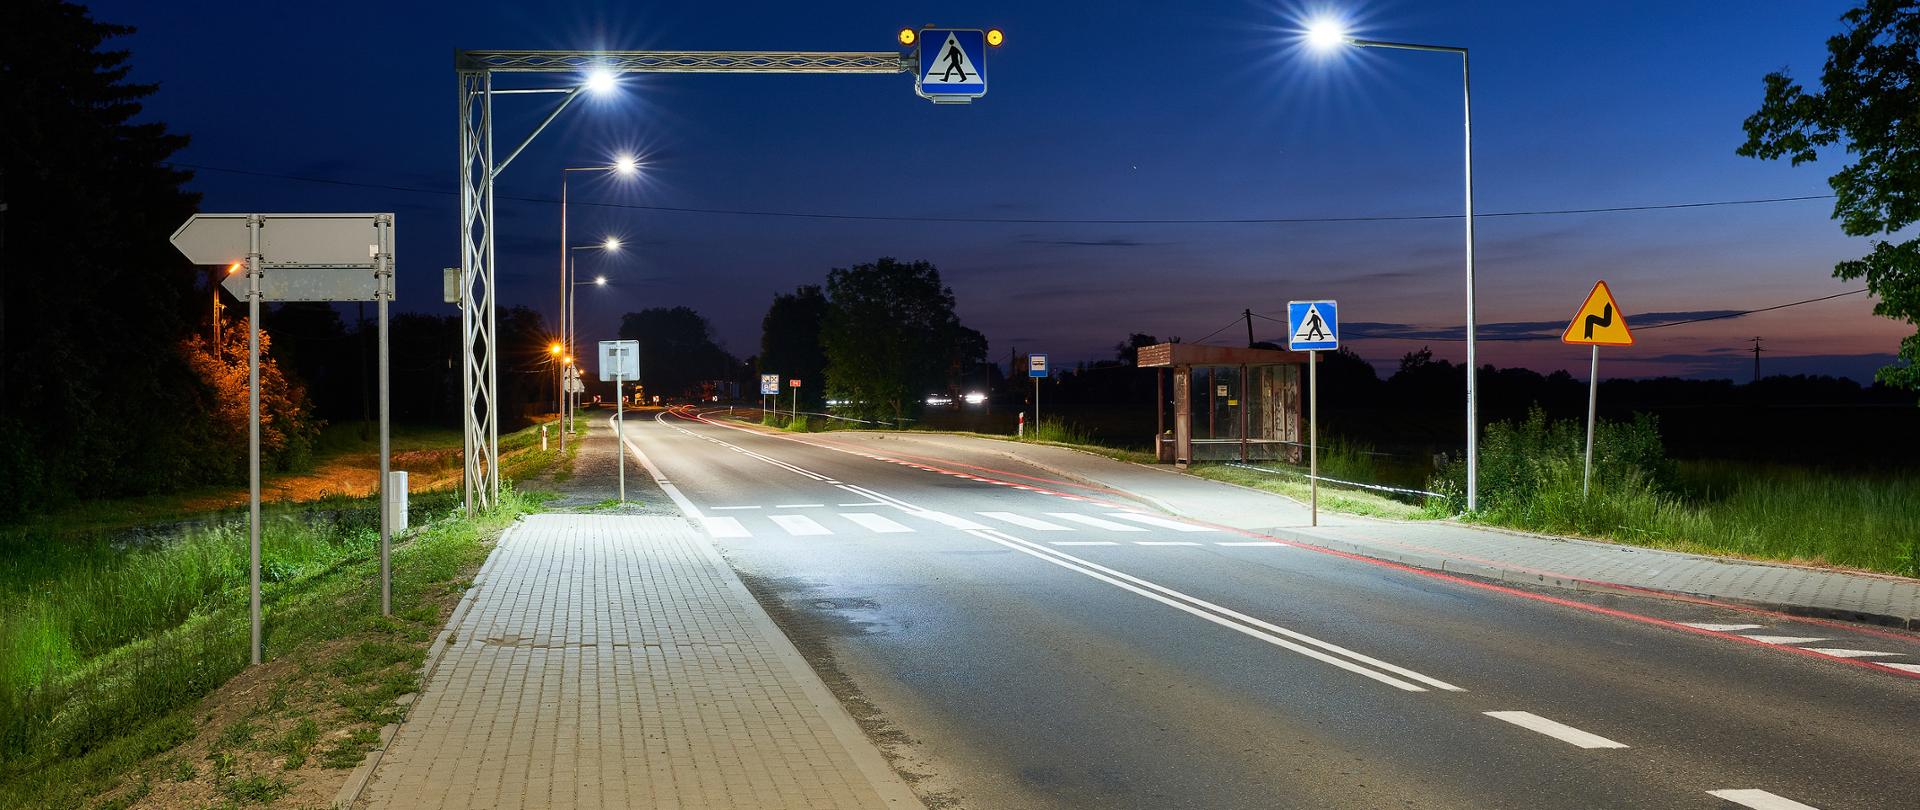 DK94 Korczowa widok w porze nocnej na chodnik i oświetlone przejście dla pieszych.